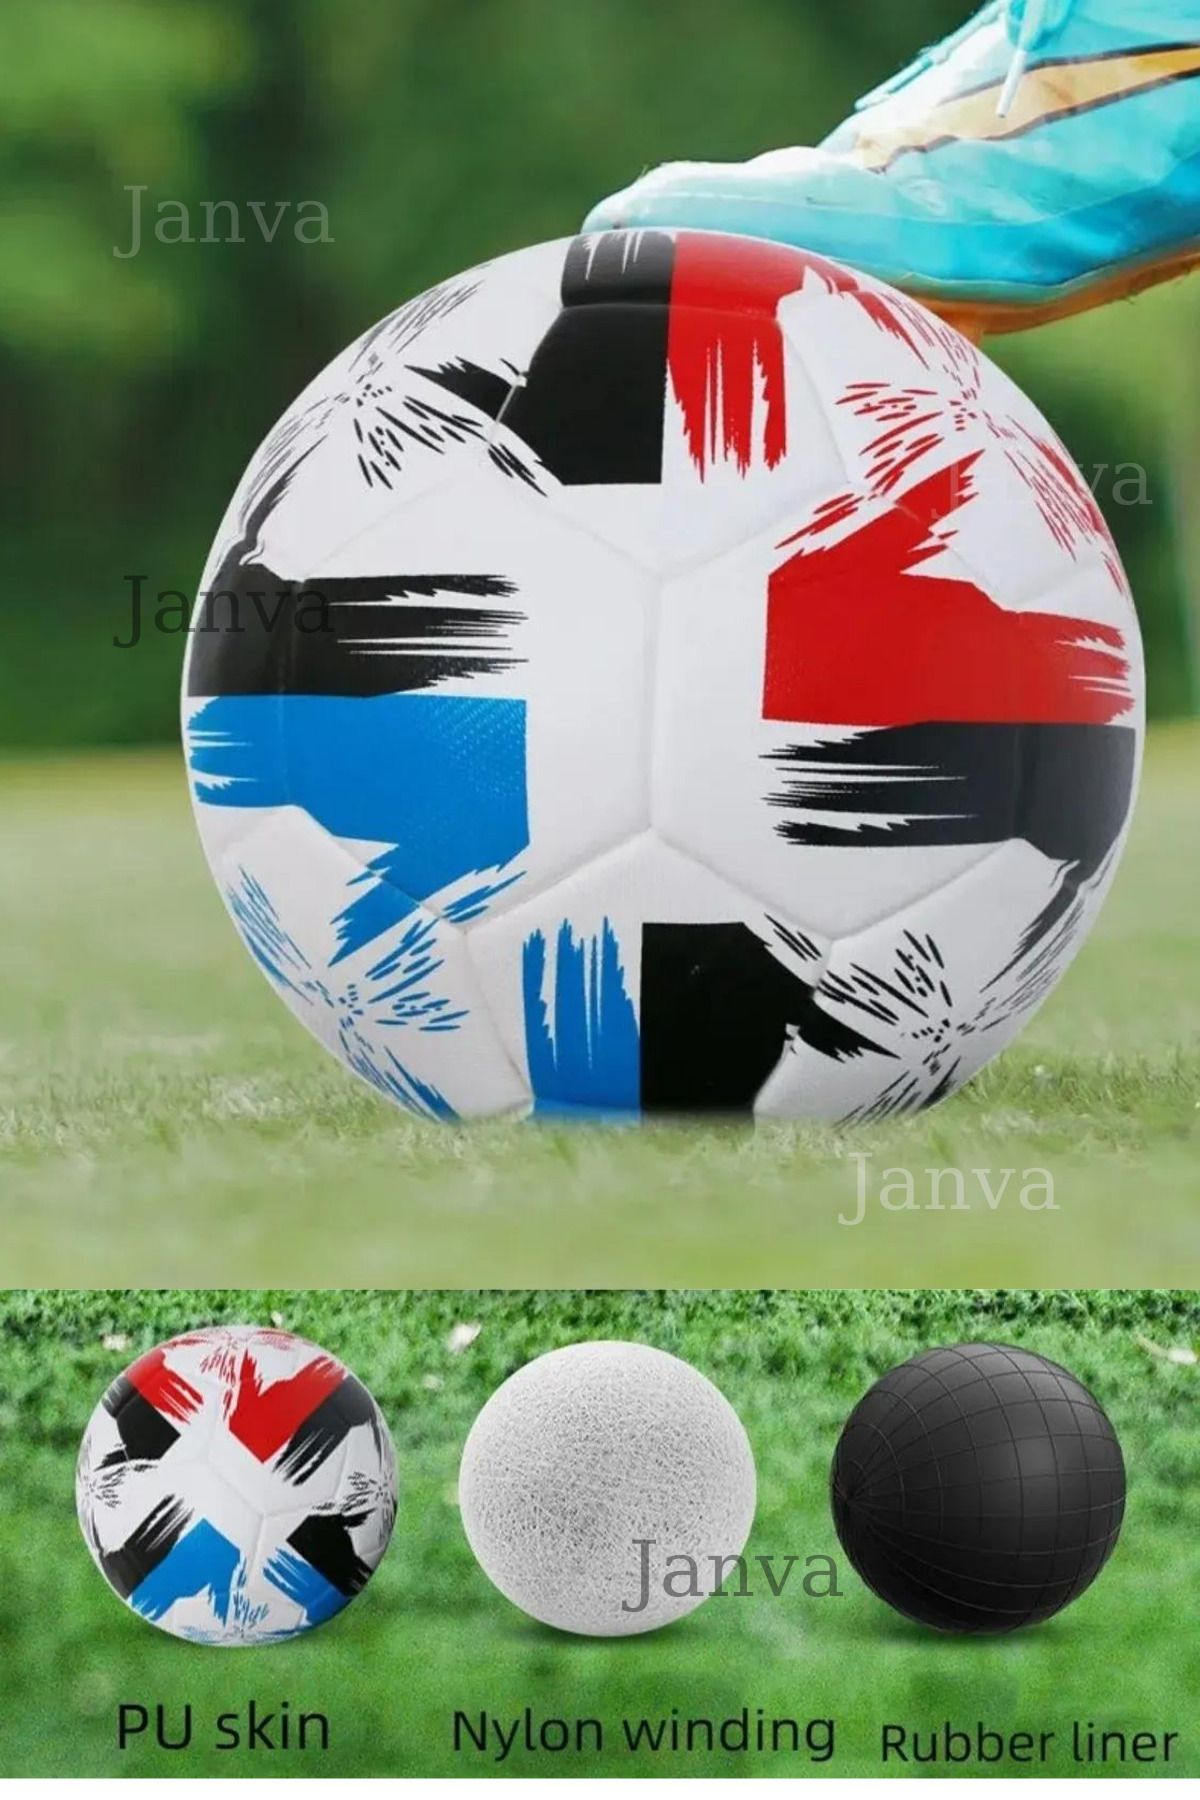 Janva Dünya Kupası Özel Tasarım Futbol Topu 400 gram Lazer Kesim Tusubasa Model